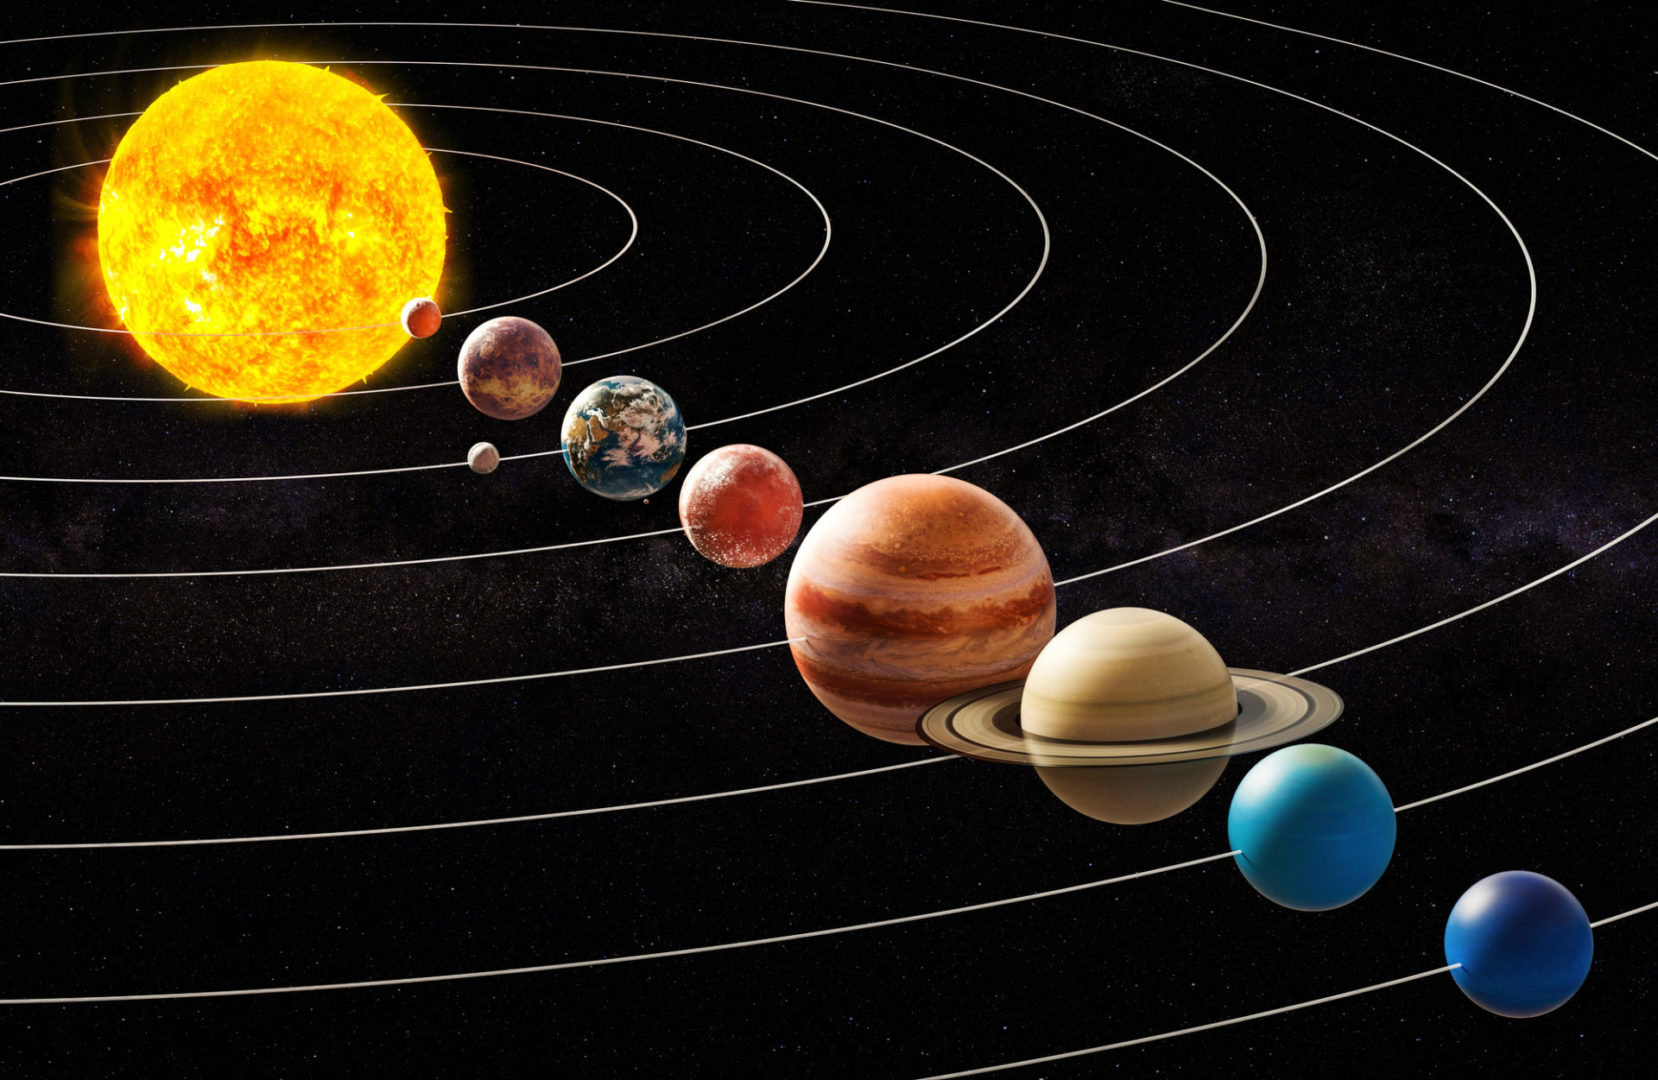 Гороскоп на 17 августа 2021 года для всех знаков зодиака. Что приготовили вам планеты в этот день?